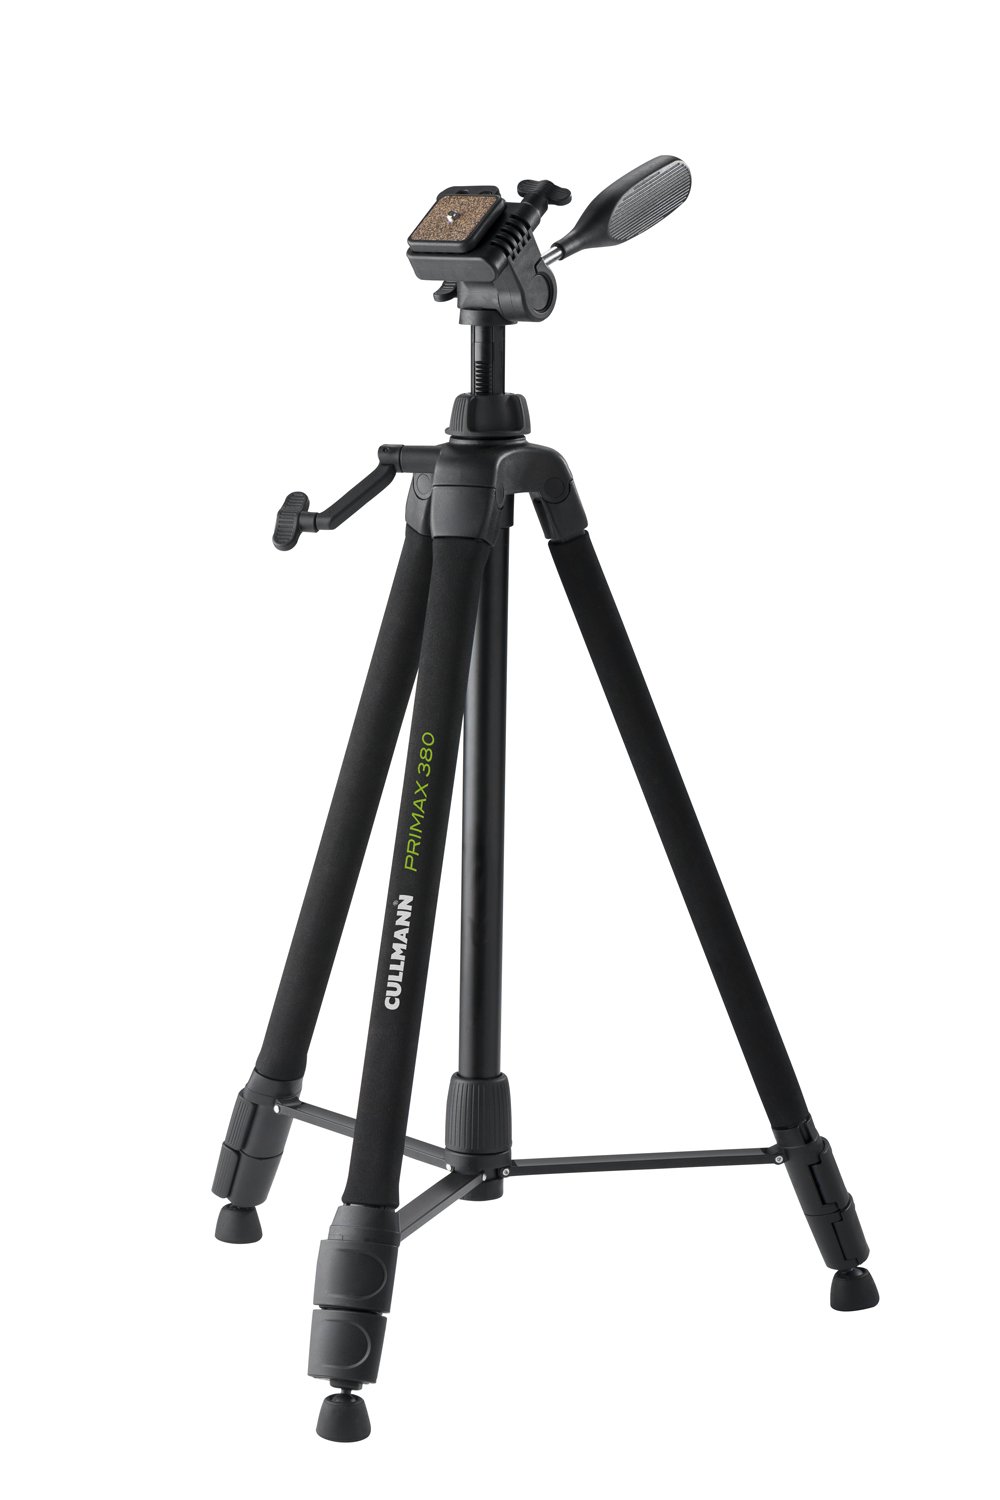 CULLMANN - 51381 - Primax 380 Dreibein-Kurbelstativ inkl. 3-Wege-Kopf mit Kamera-Schnellkupplung (1/4") - Auszugshöhe 159cm - Tragfähigkeit 3,5kg - Packmaß 66cm - Gewicht 1535g, Schwarz